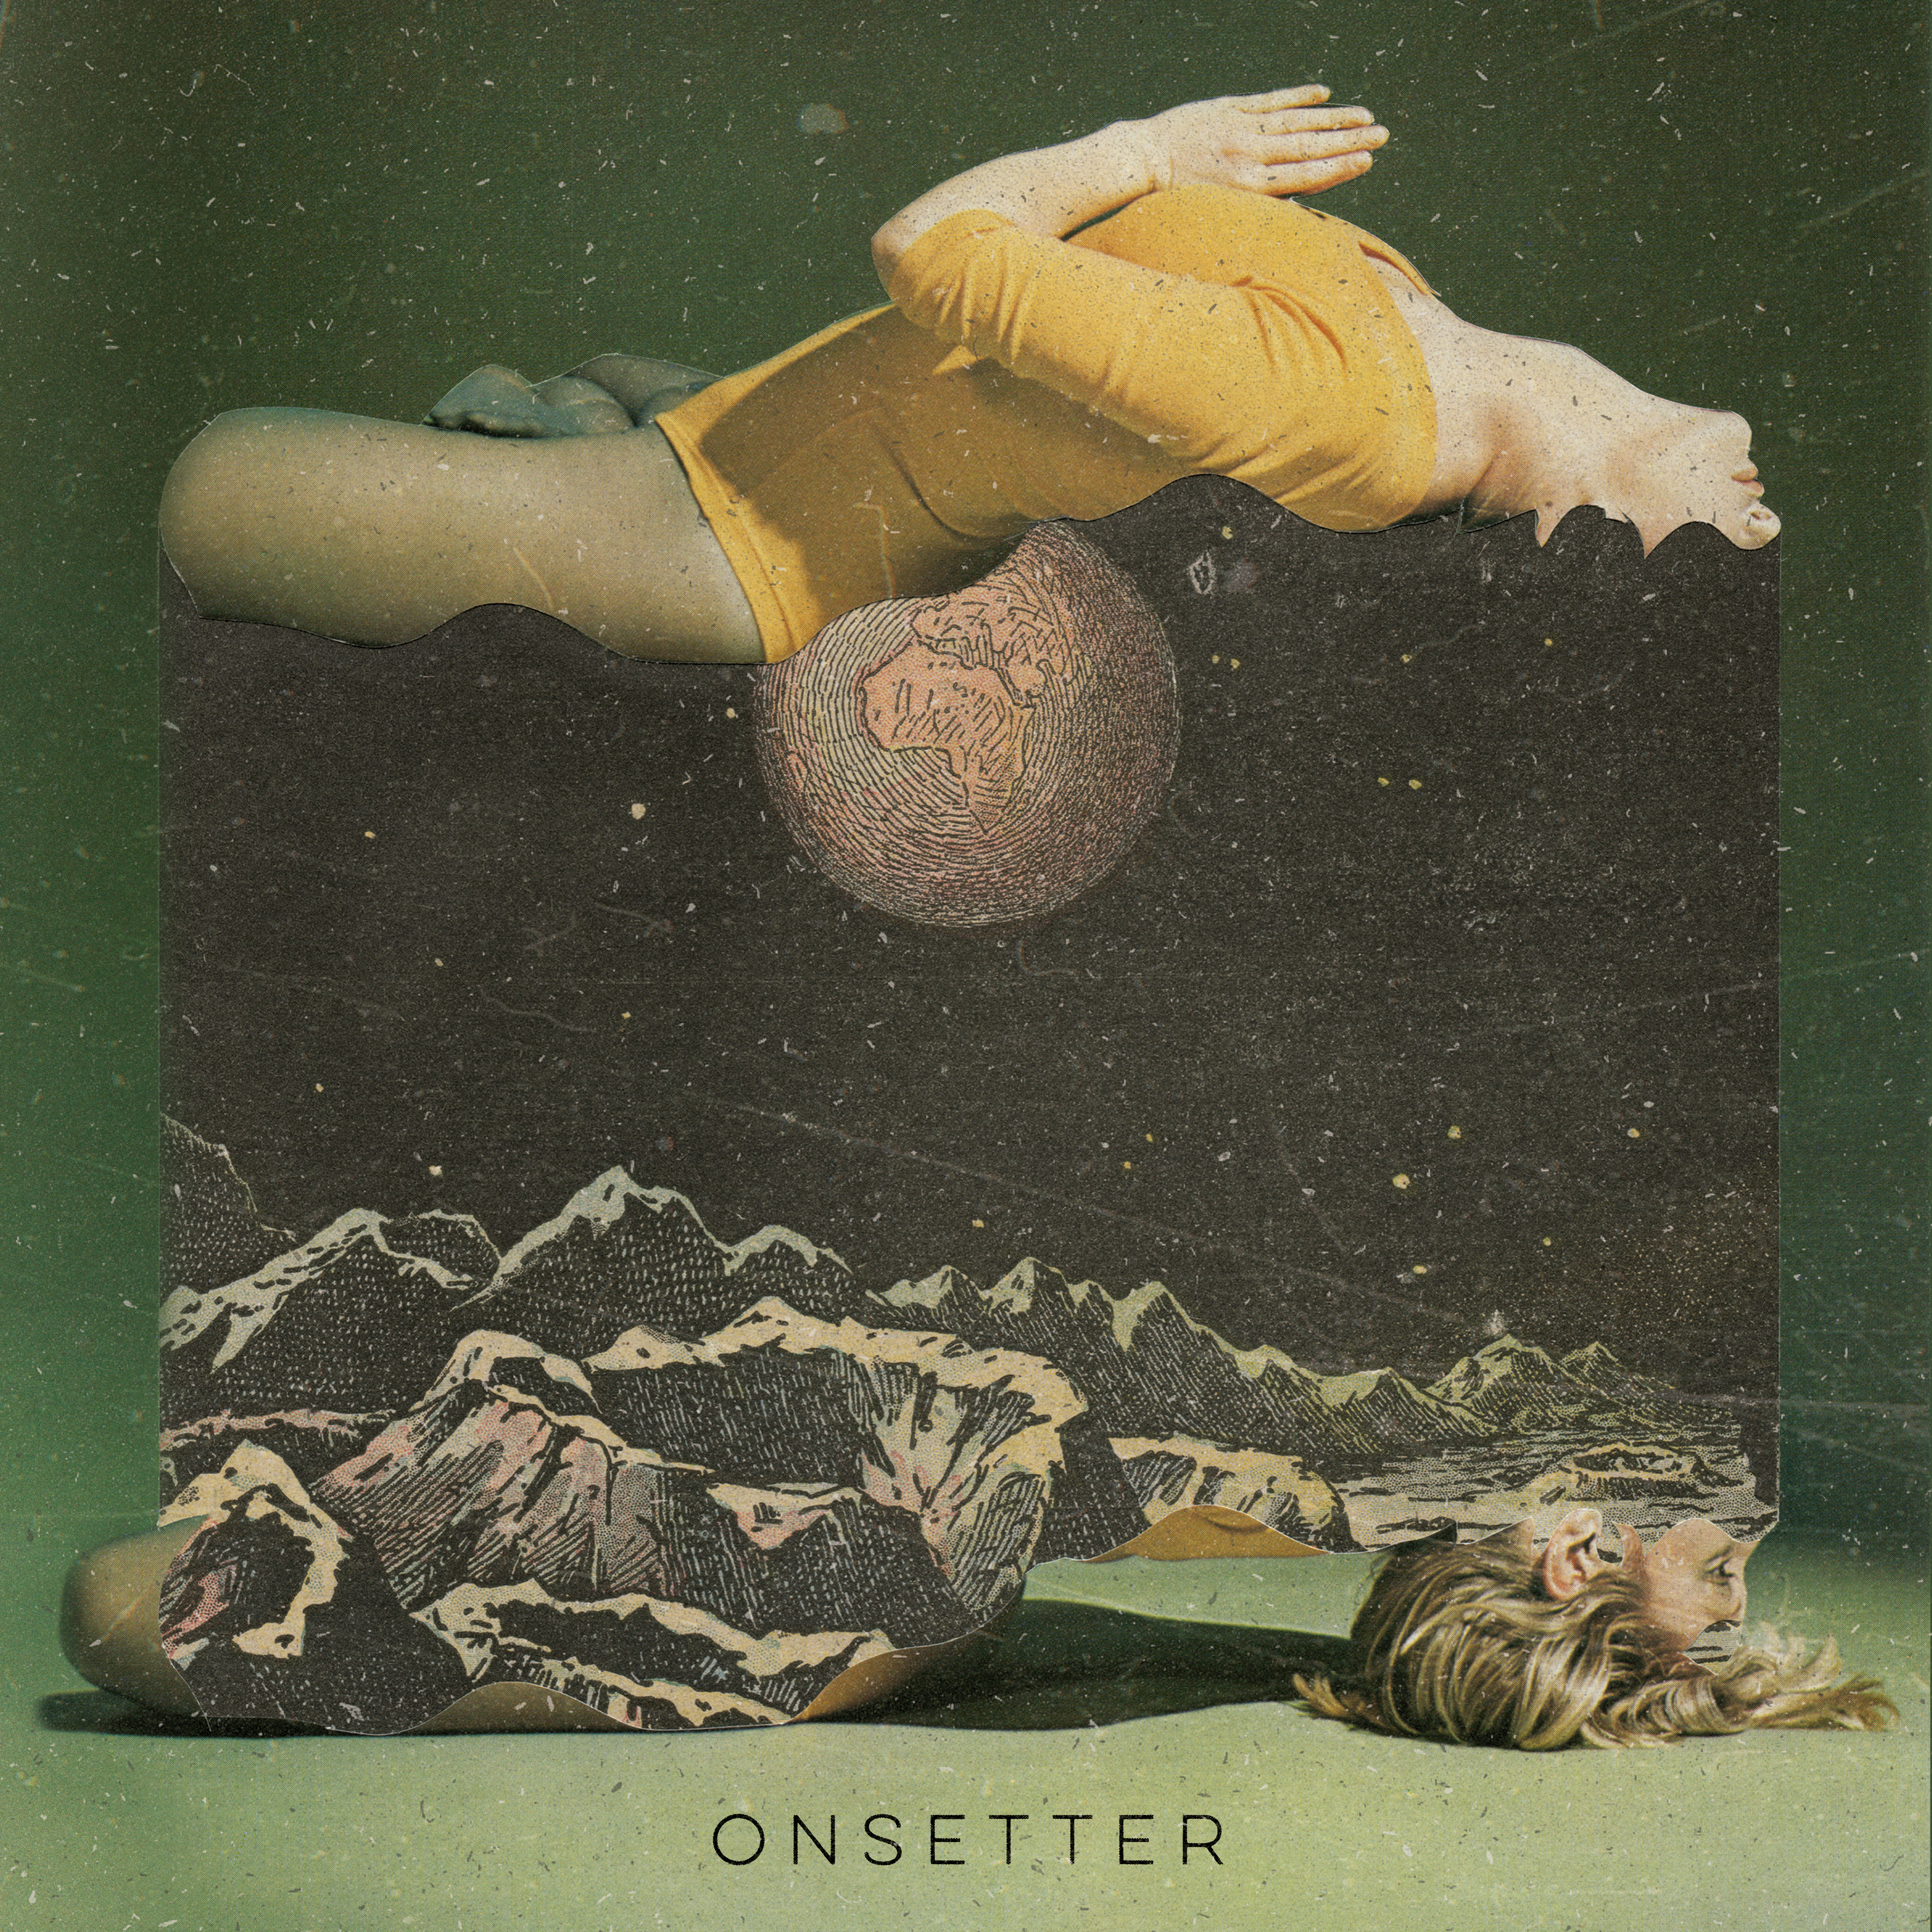 Onsetter - "S/T" Black Vinyl (Pre-Order)